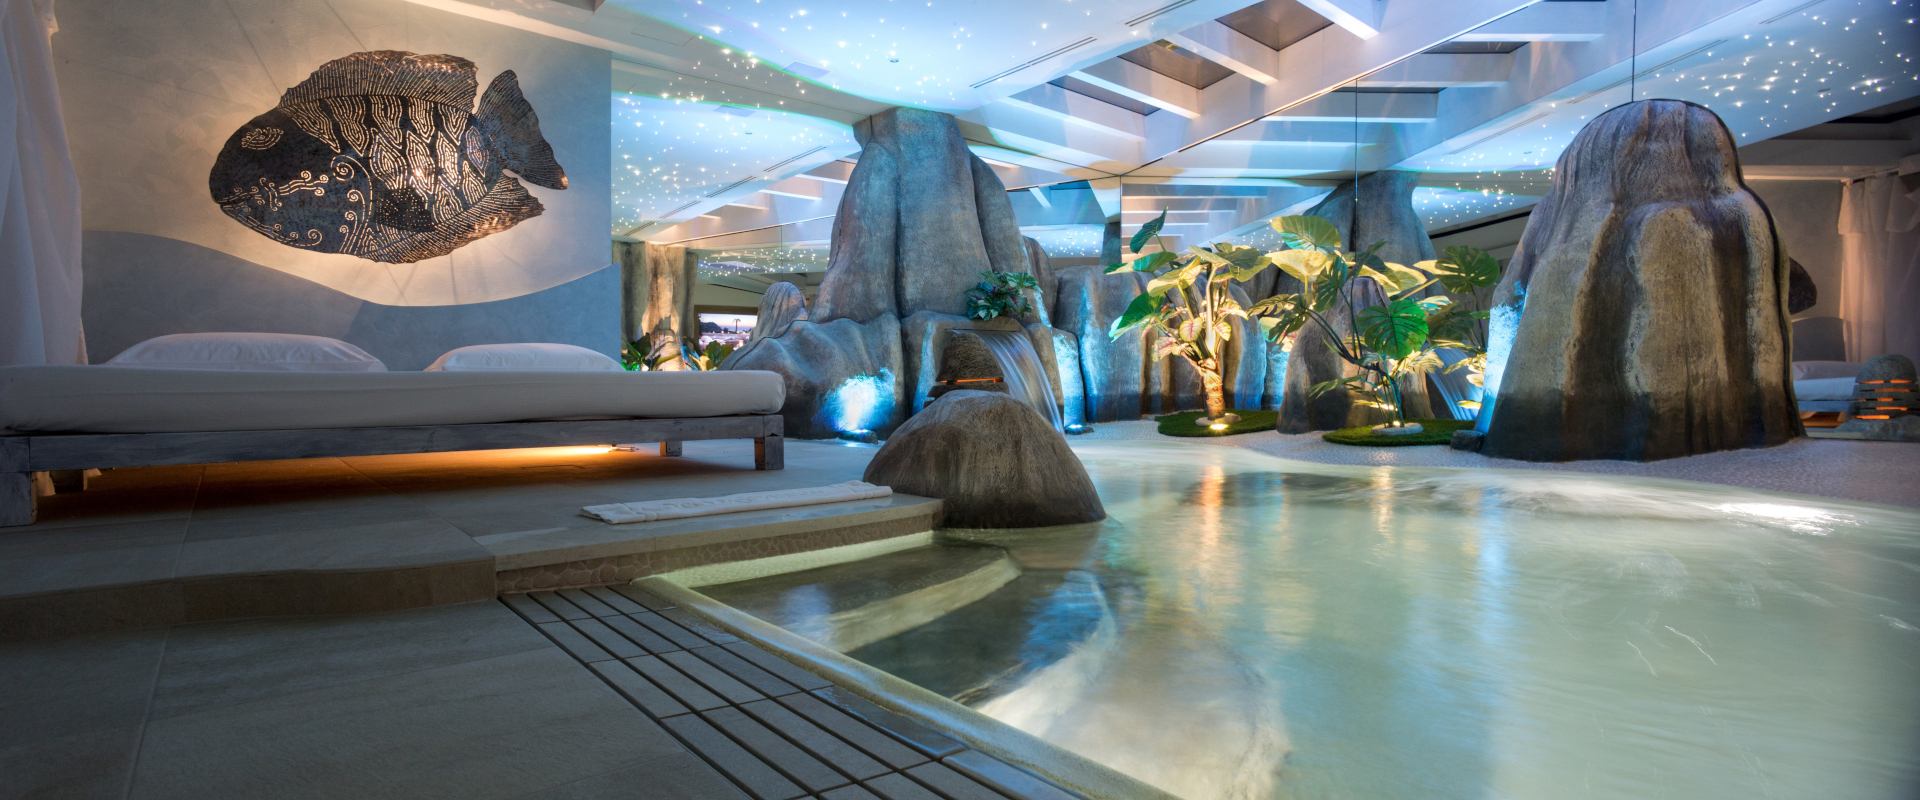 Motel K Pool Villa Seychelles vista sulla piscina idromassaggio con cascata e cromoterapia, coreografia di rocce naturali, letto matrimoniale a bordo piscina e piante esotiche, camera a tema isole dell'oceano indiano